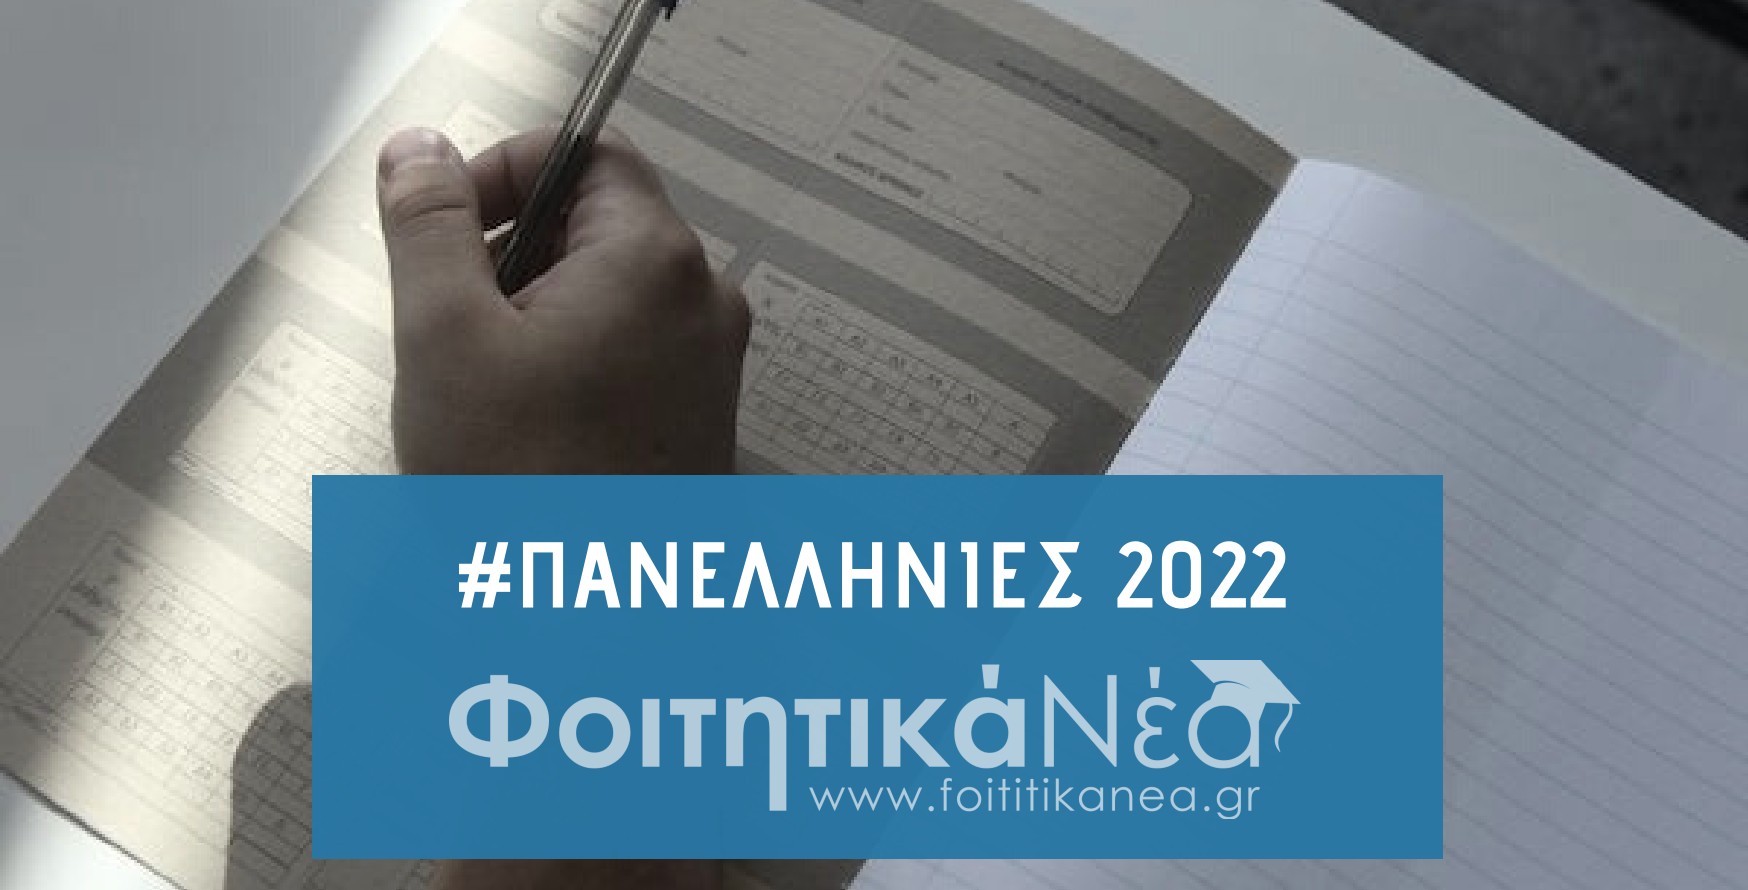  ΕΠΙΣΗΜΟ: Το Πρόγραμμα των Πανελληνίων 2022